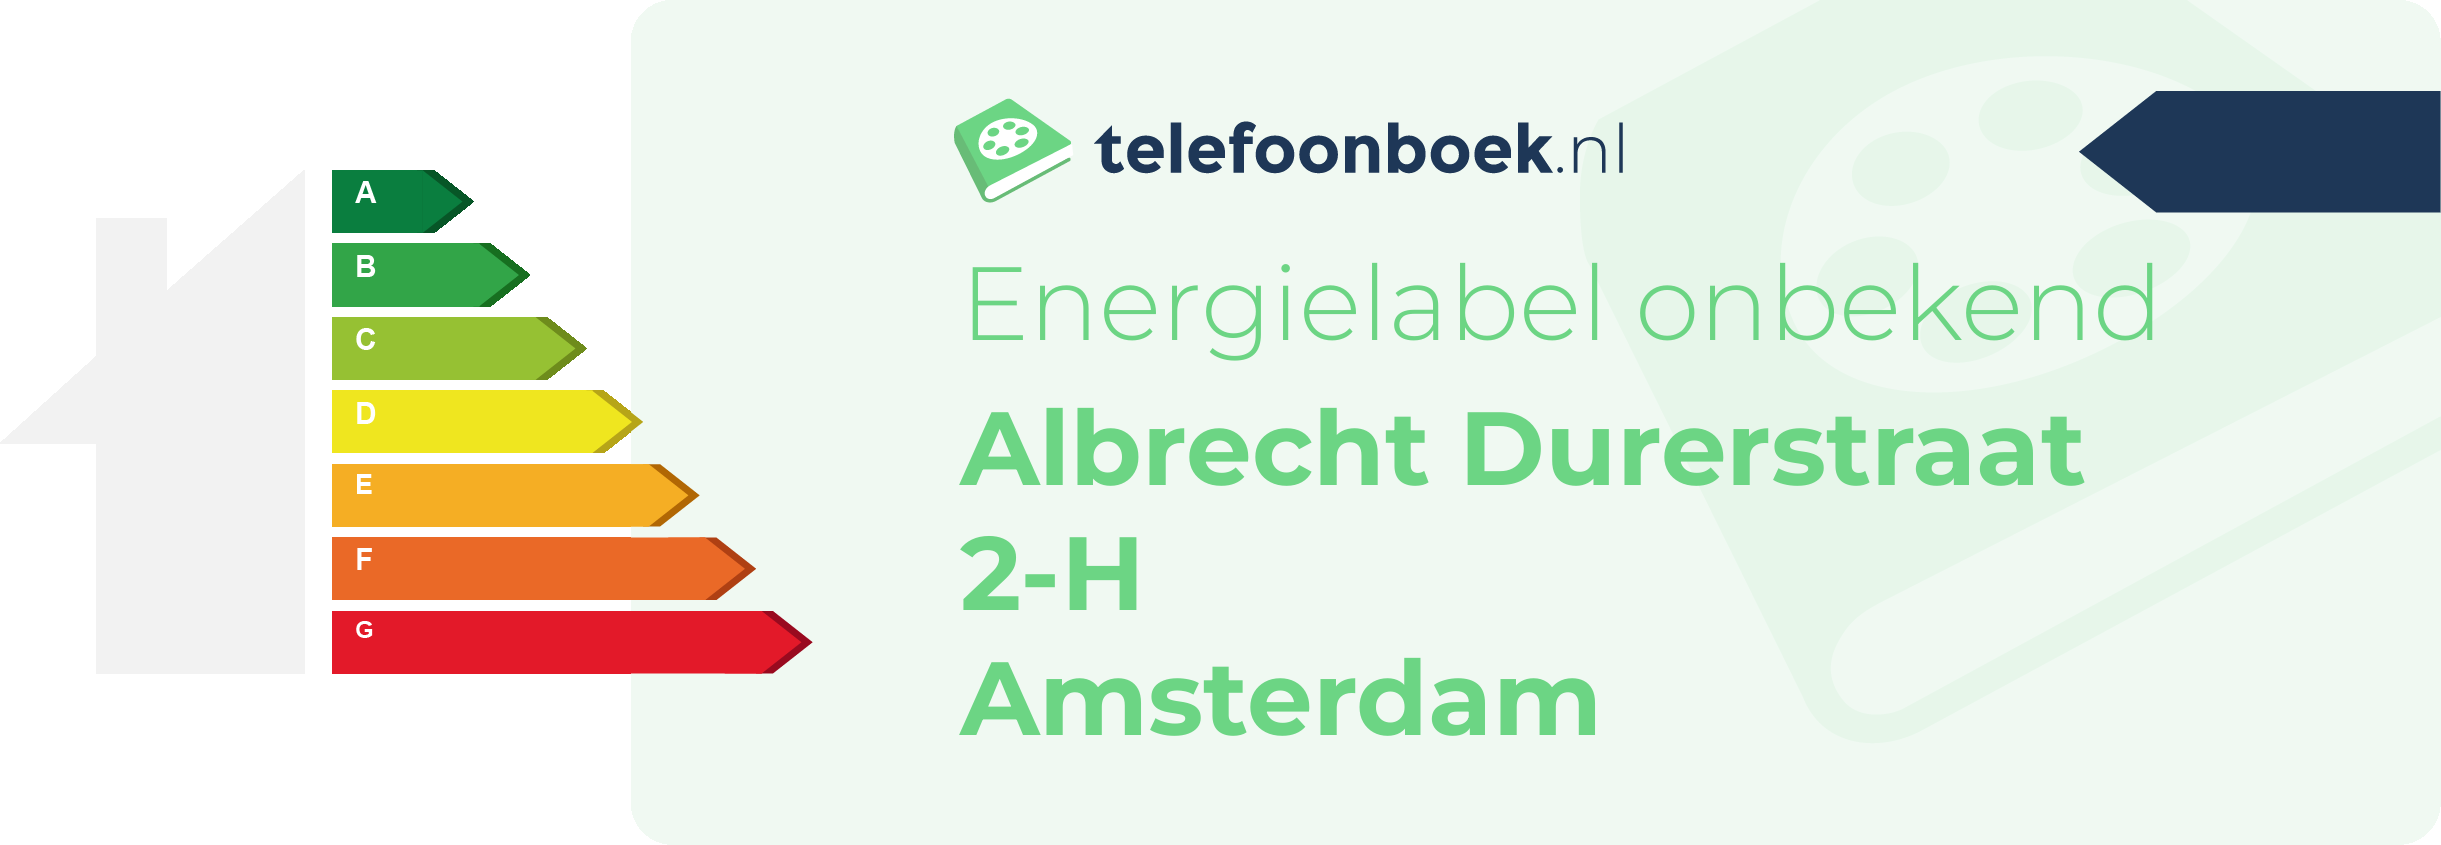 Energielabel Albrecht Durerstraat 2-H Amsterdam